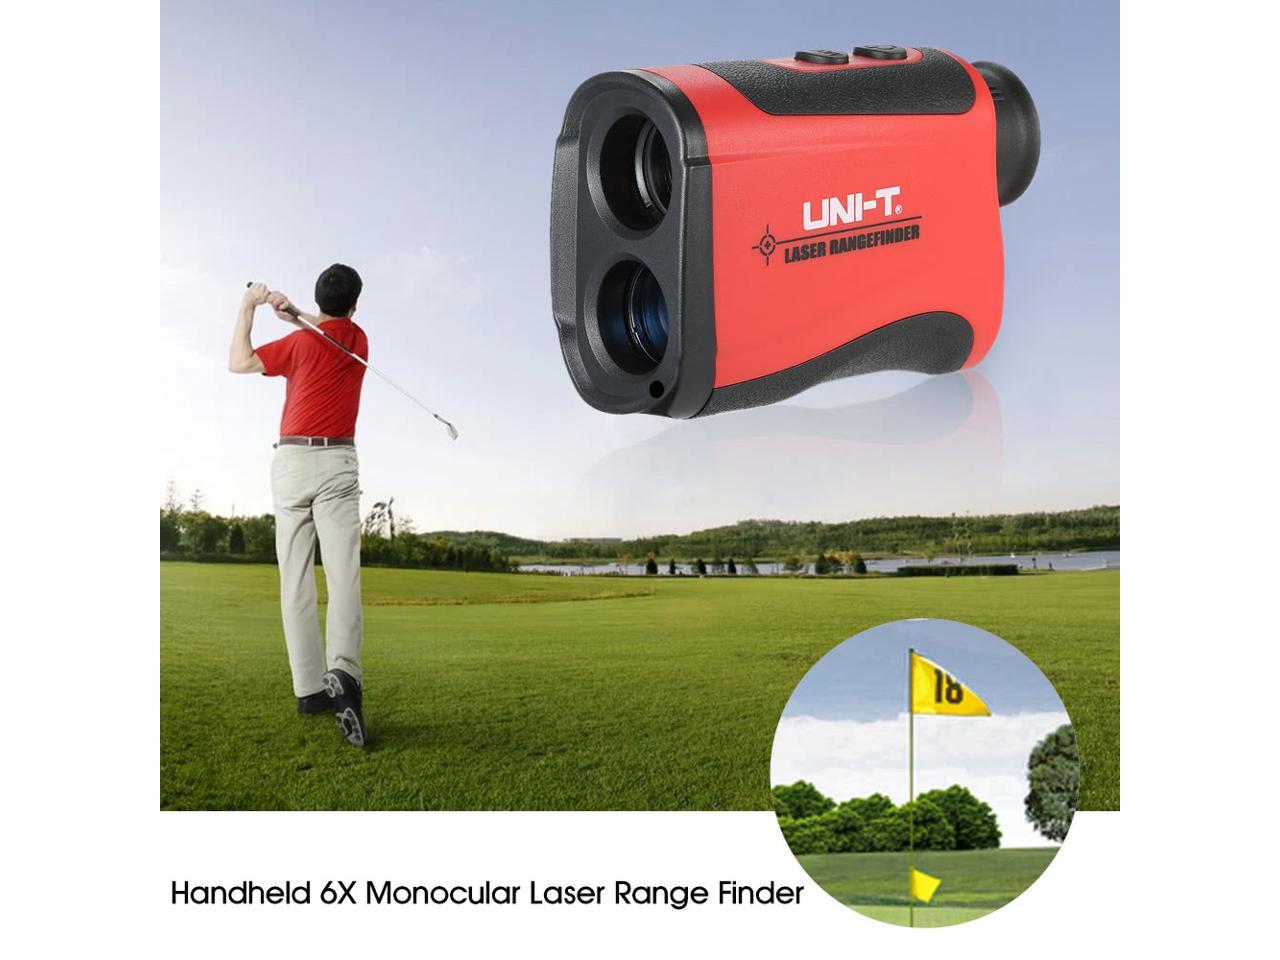 1pc Uni-t Lr1000 3280 10/12ft Laser Range Finder Distance Meter Monocular Telesc for sale online